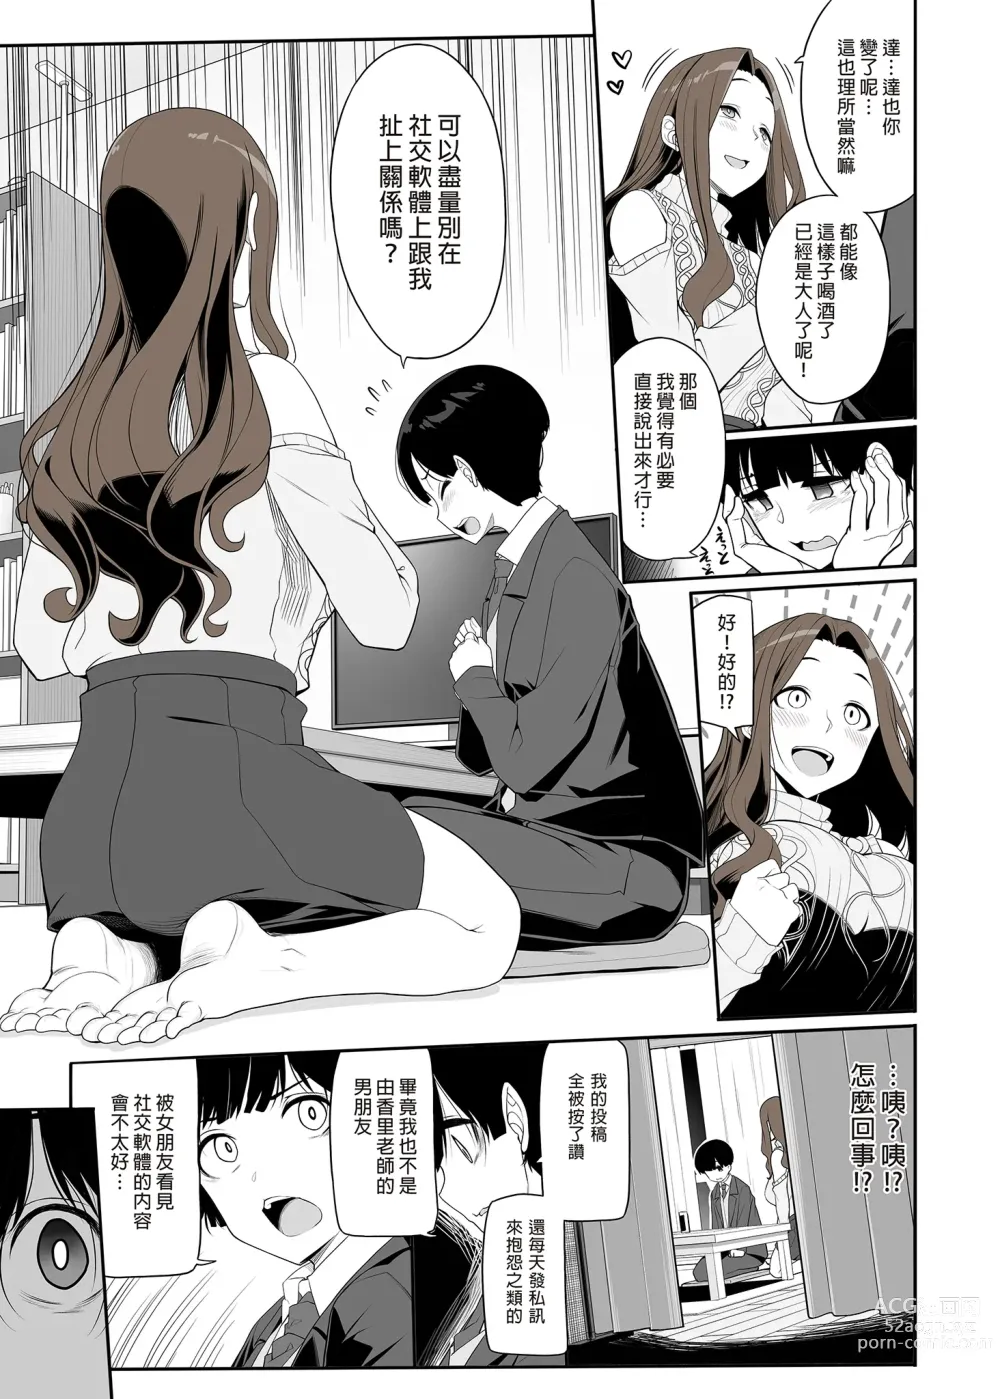 Page 7 of doujinshi 和痴情的姐姐重逢後竟被求婚且每日性福連連 (uncensored)